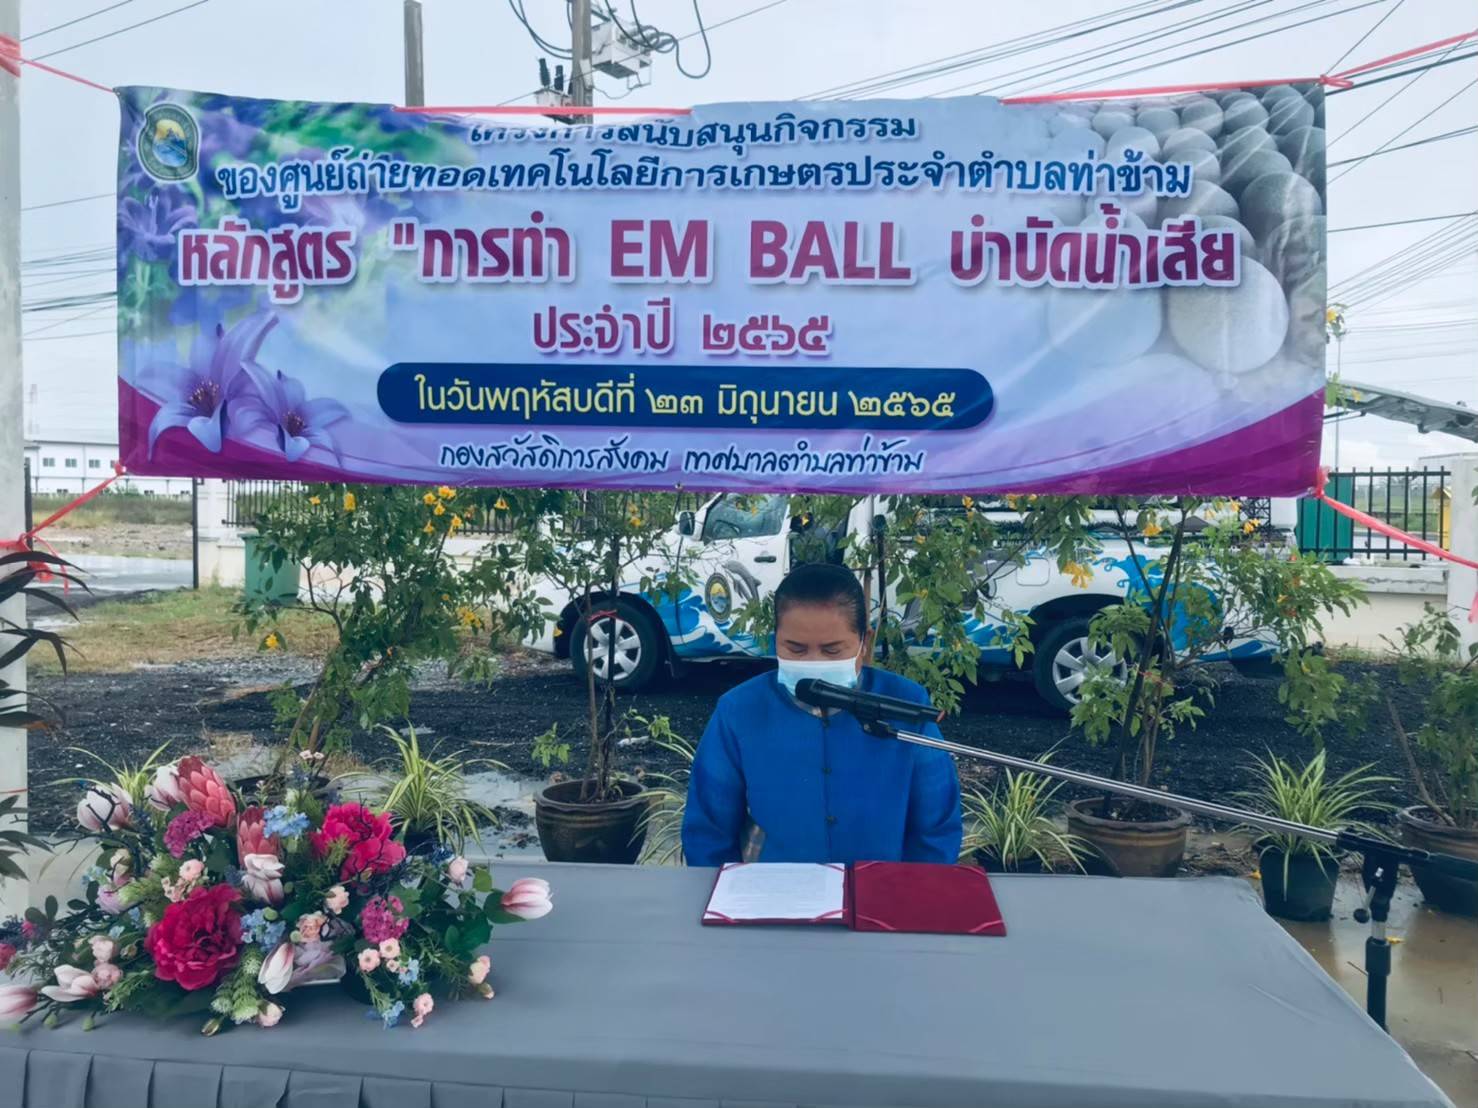 โครงการสนับสนุนกิจกรรมของศูนย์ถ่ายทอดเทคโรโลยีการเกษตรประจำตำบลท่าข้าม หลักสูตร การทำ EM Ball บำบัดน้ำเสีย ประจำปี 2565